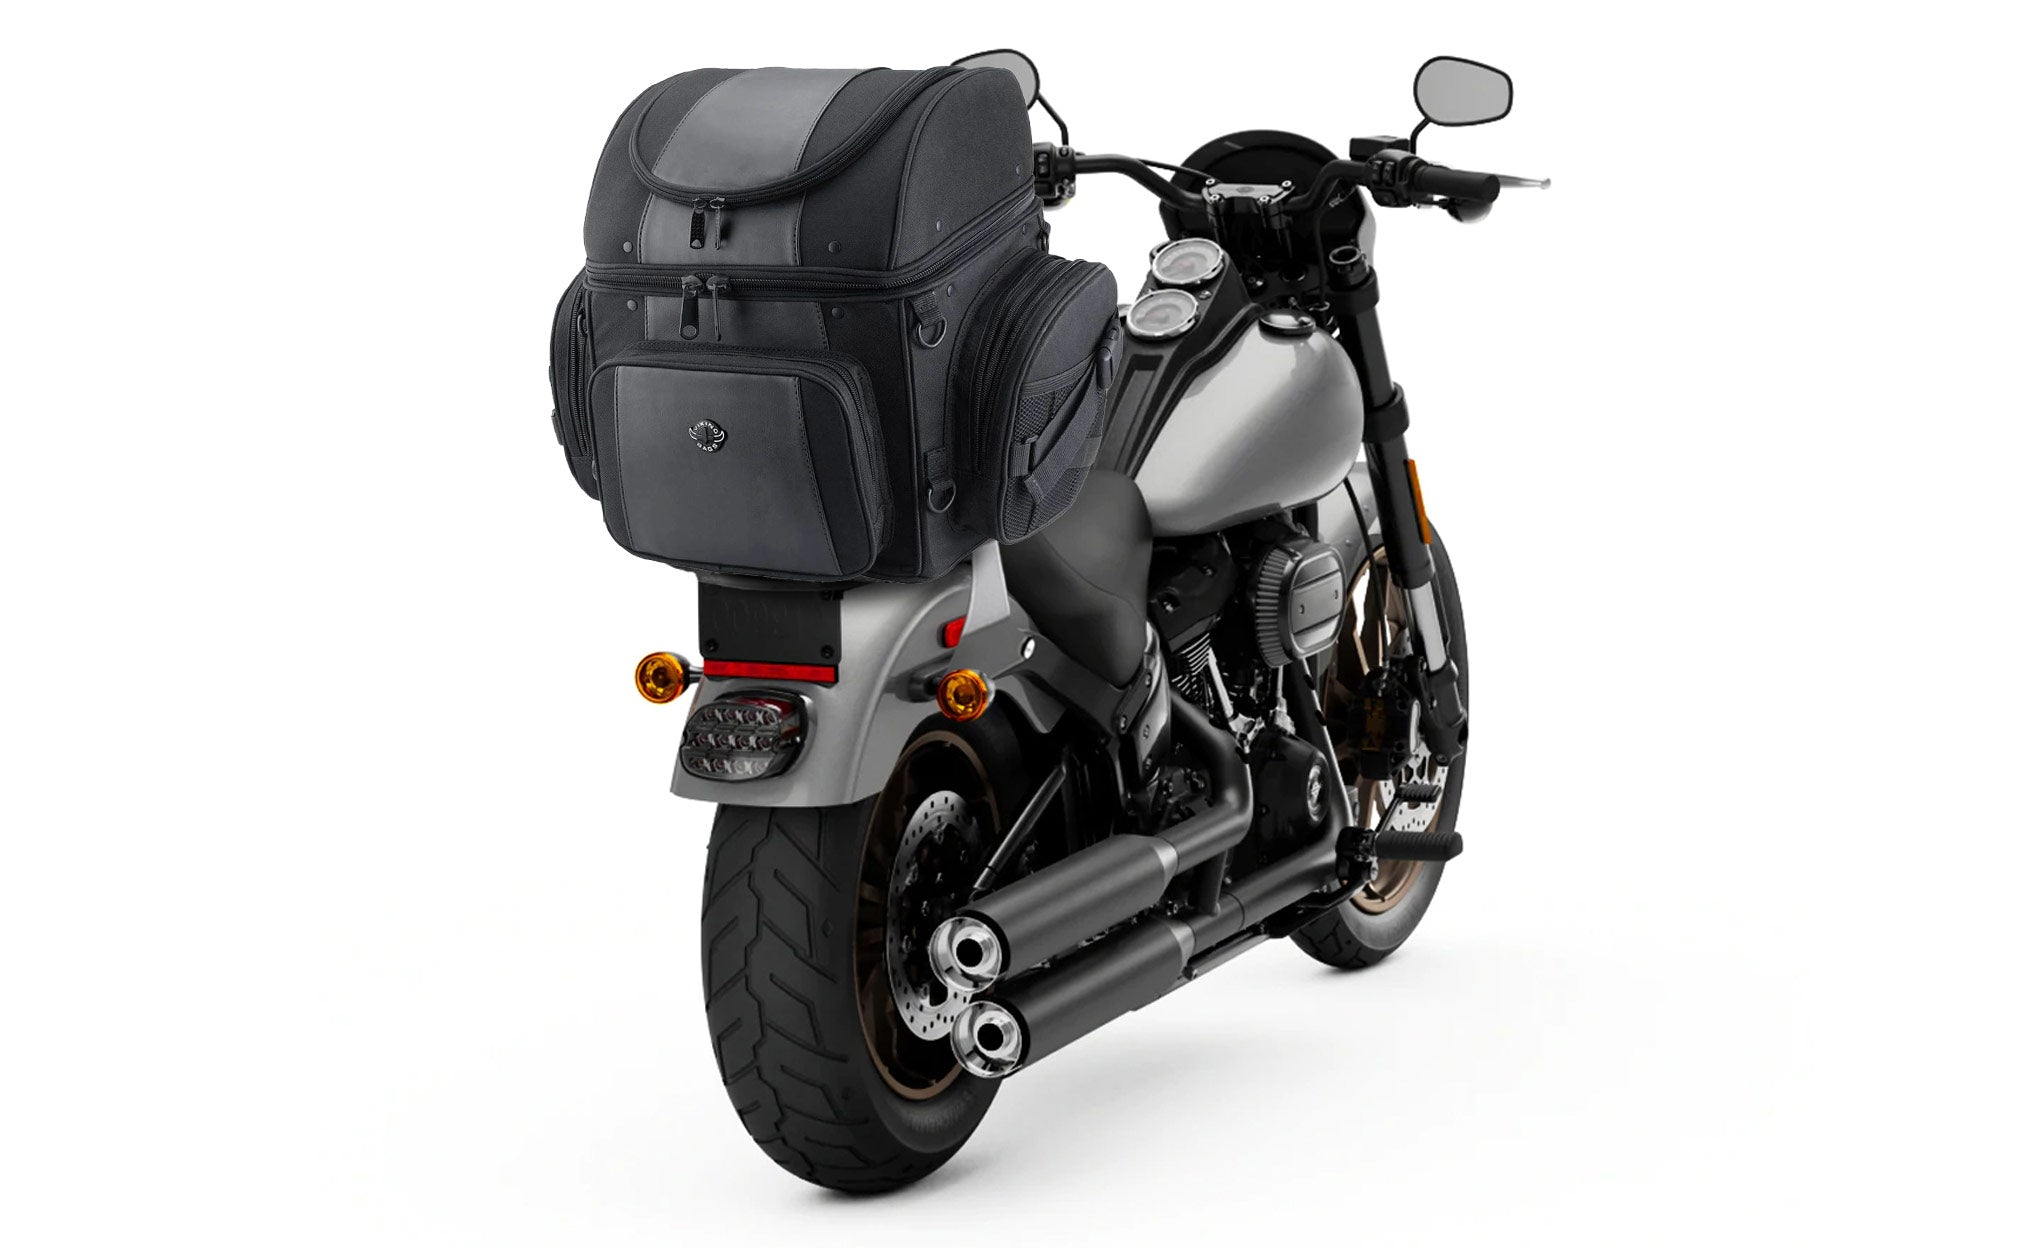 Viking Galleon Large Honda Motorcycle Sissy Bar Bag Bag on Bike View @expand